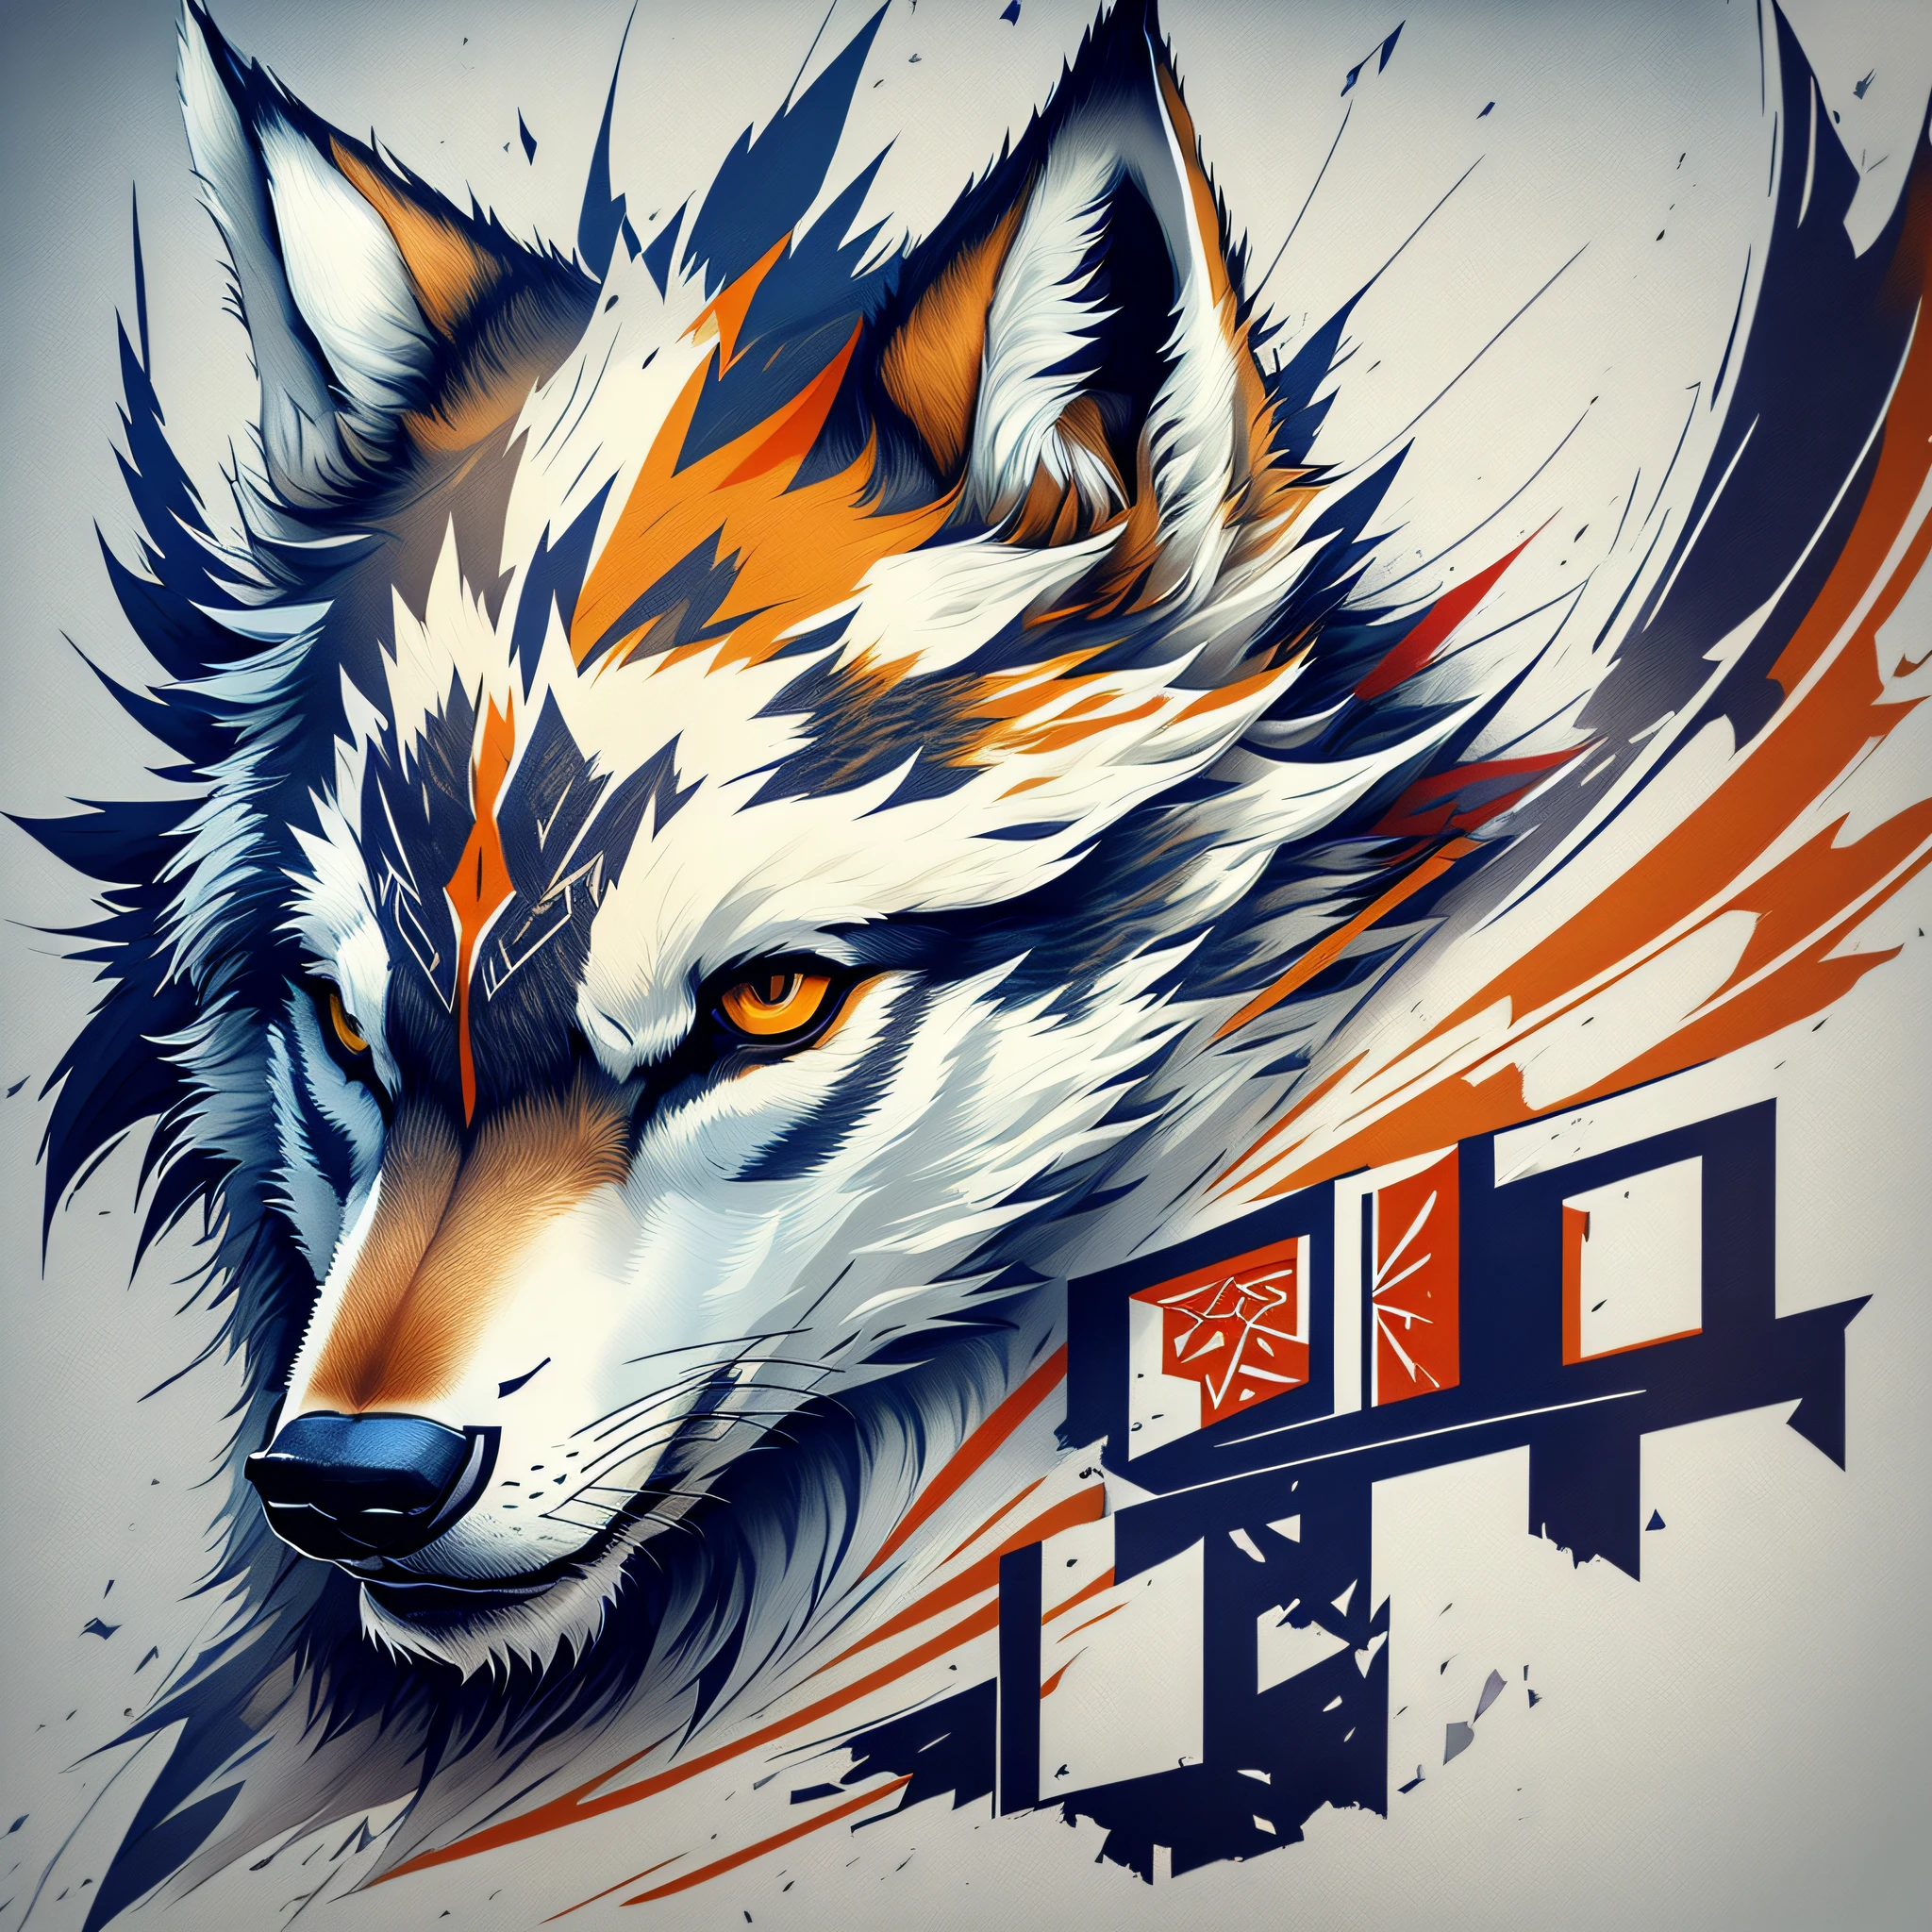 クリエイティブなロゴデザイン, オオカミの文字が入ったロゴ, ウルフラインアートロゴ, カラーデザイン, 最小限かつ純粋 — Wolf --auto --s2